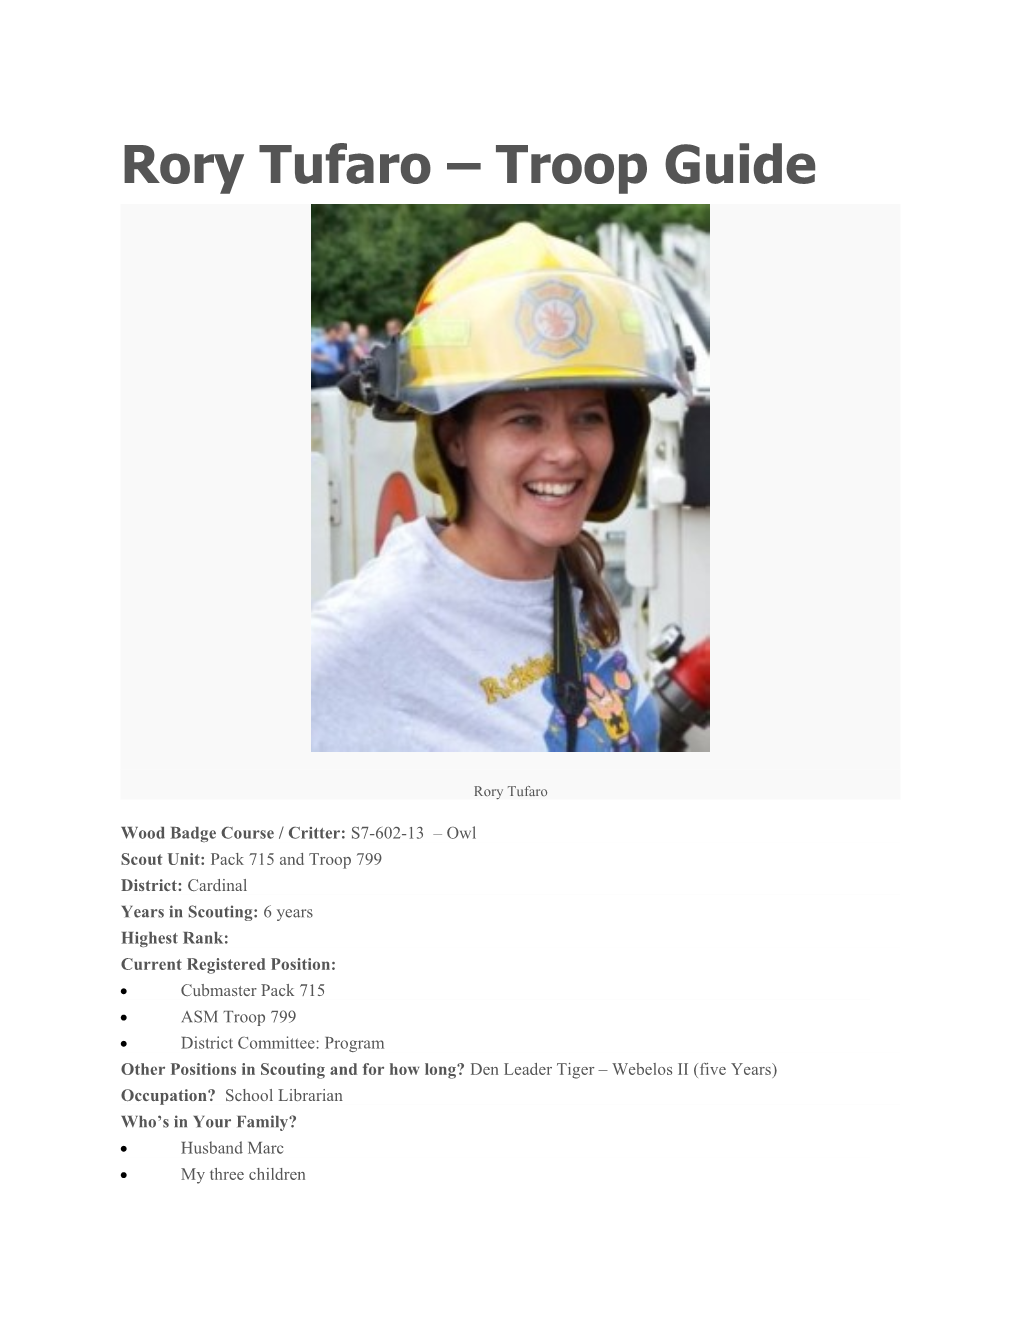 Rory Tufaro Troop Guide